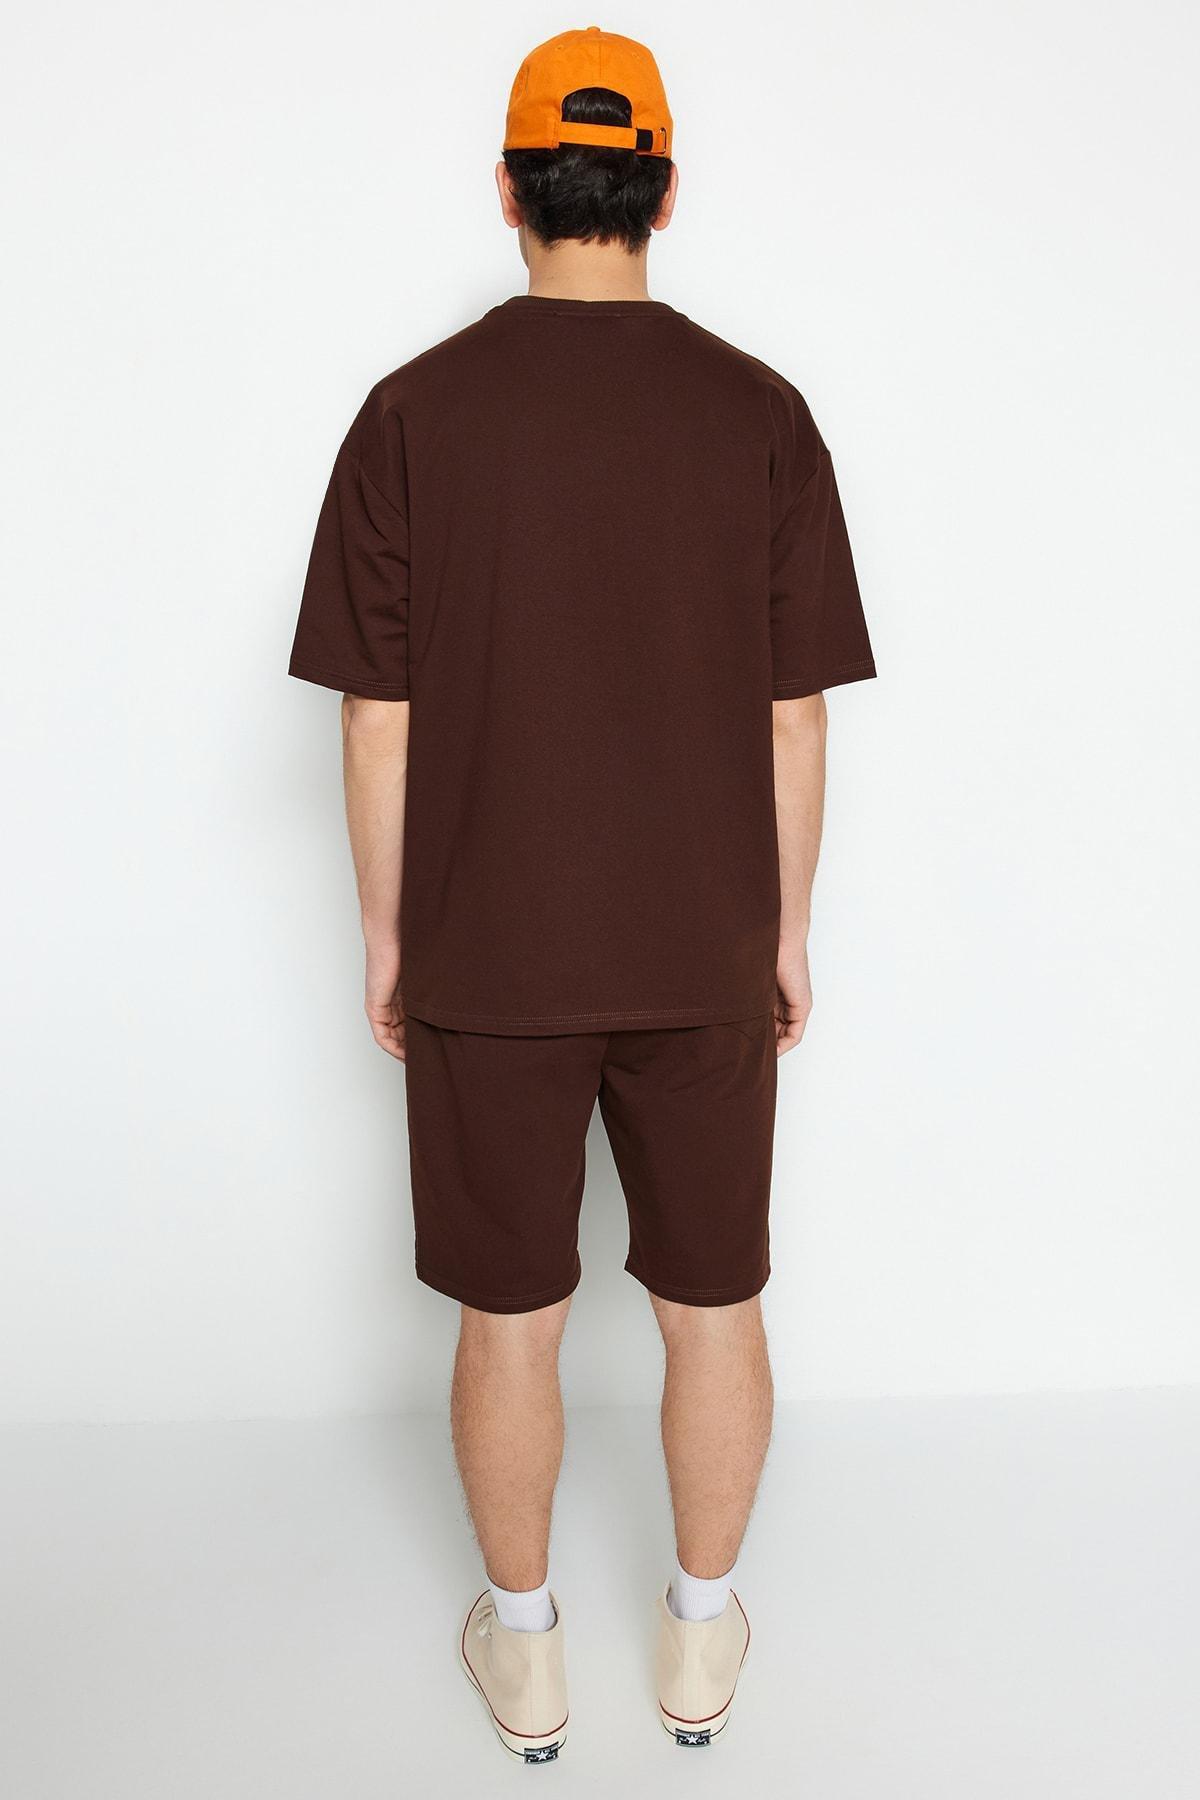 Trendyol - Brown Printed Sweatsuit